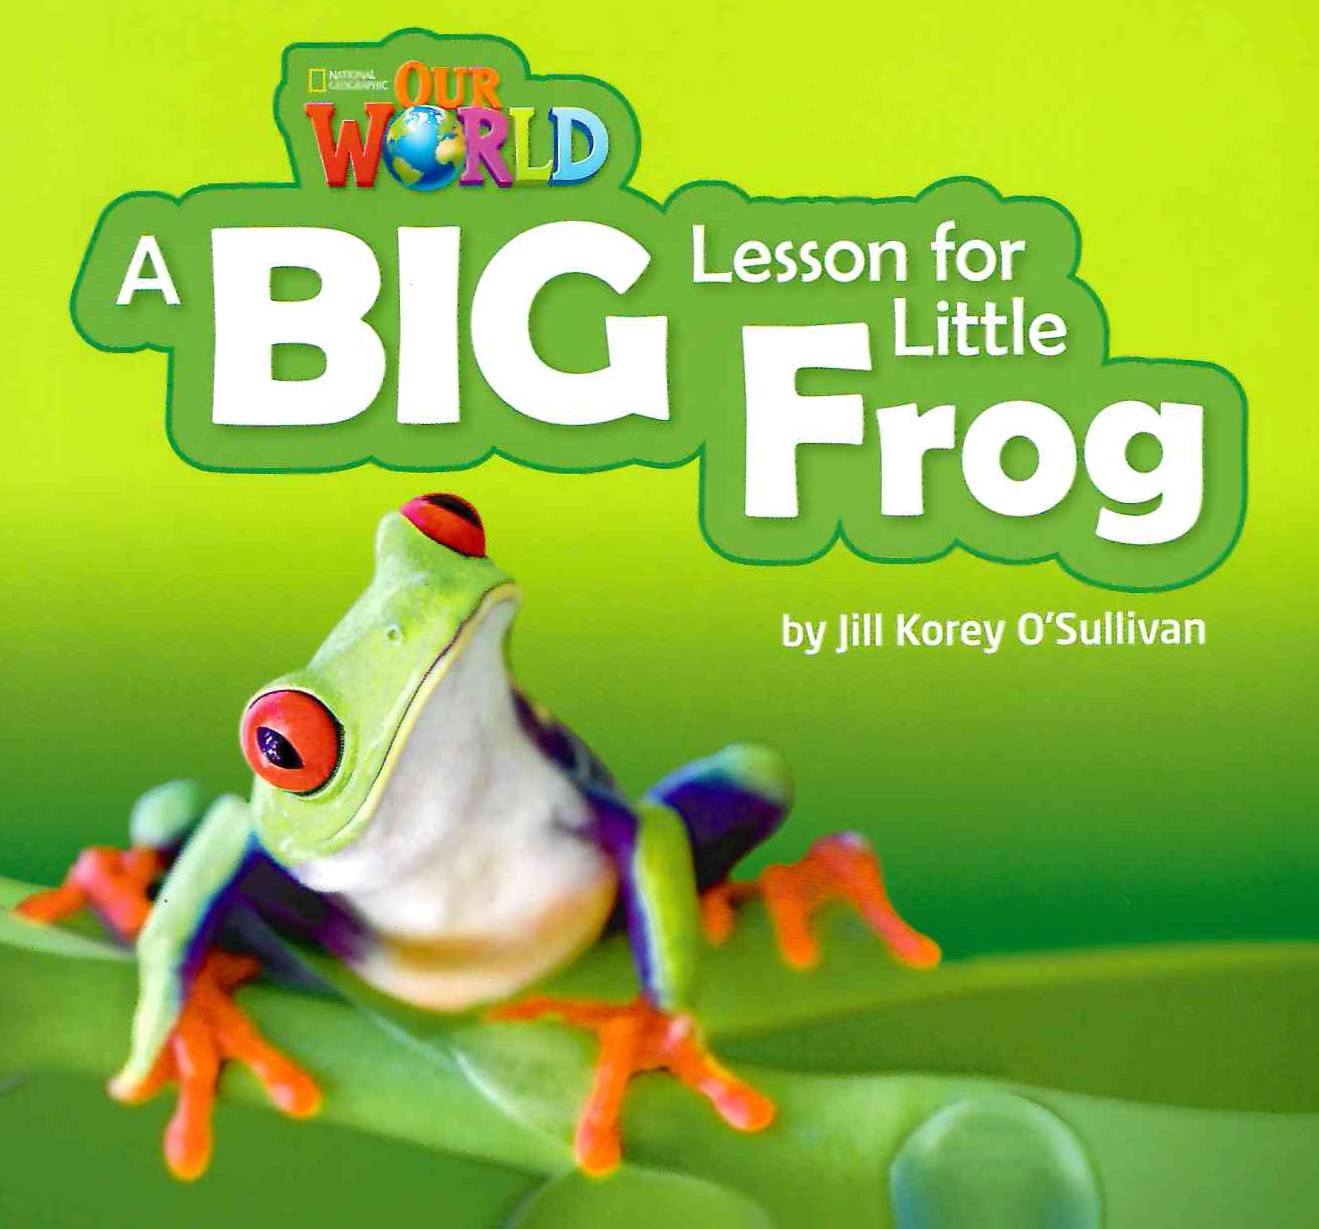 Our World 2 A Big Lesson for Little Frog / Книга для чтения